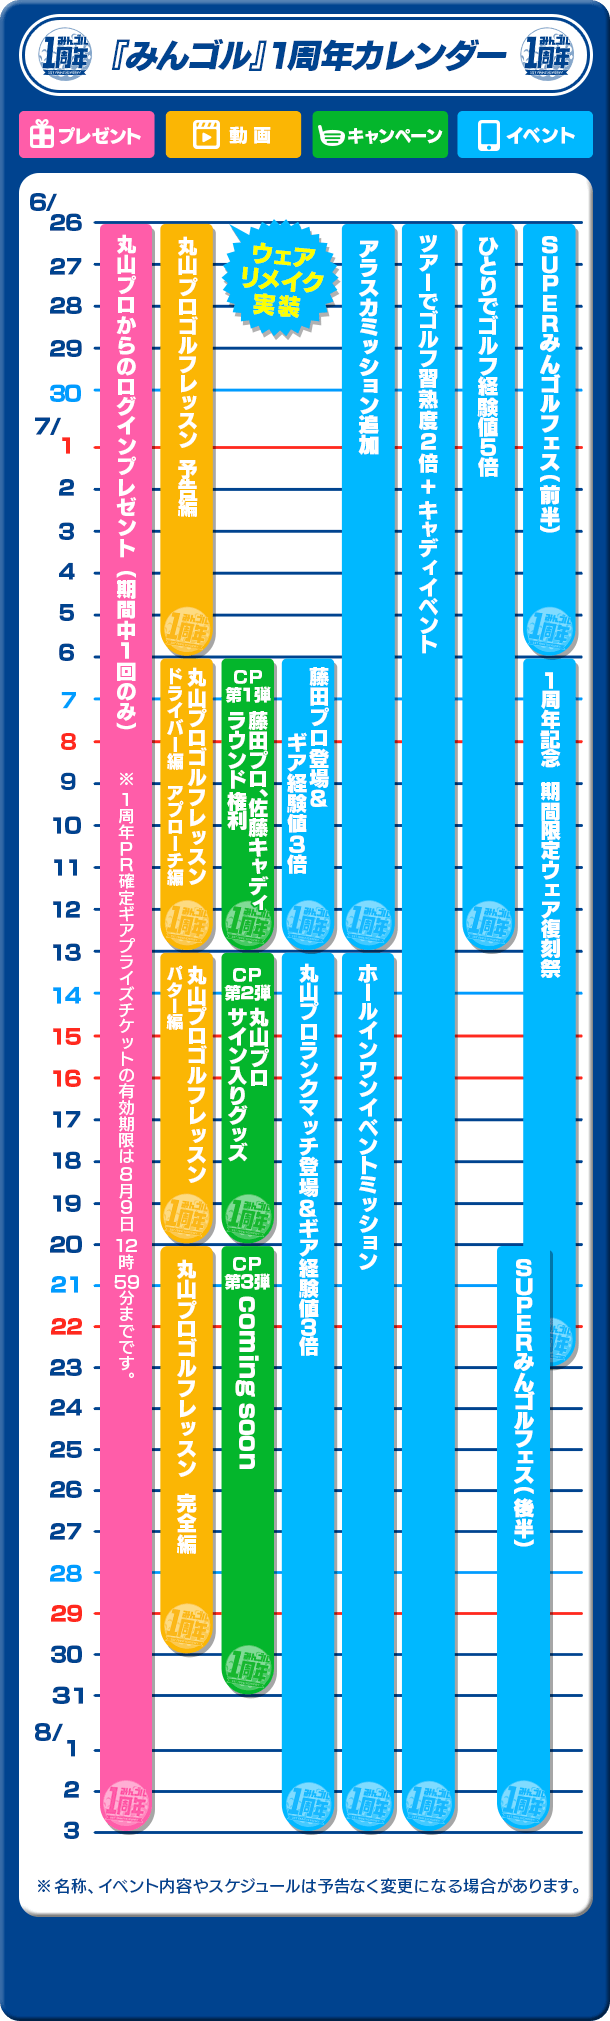 『みんゴル』1周年イベントカレンダー